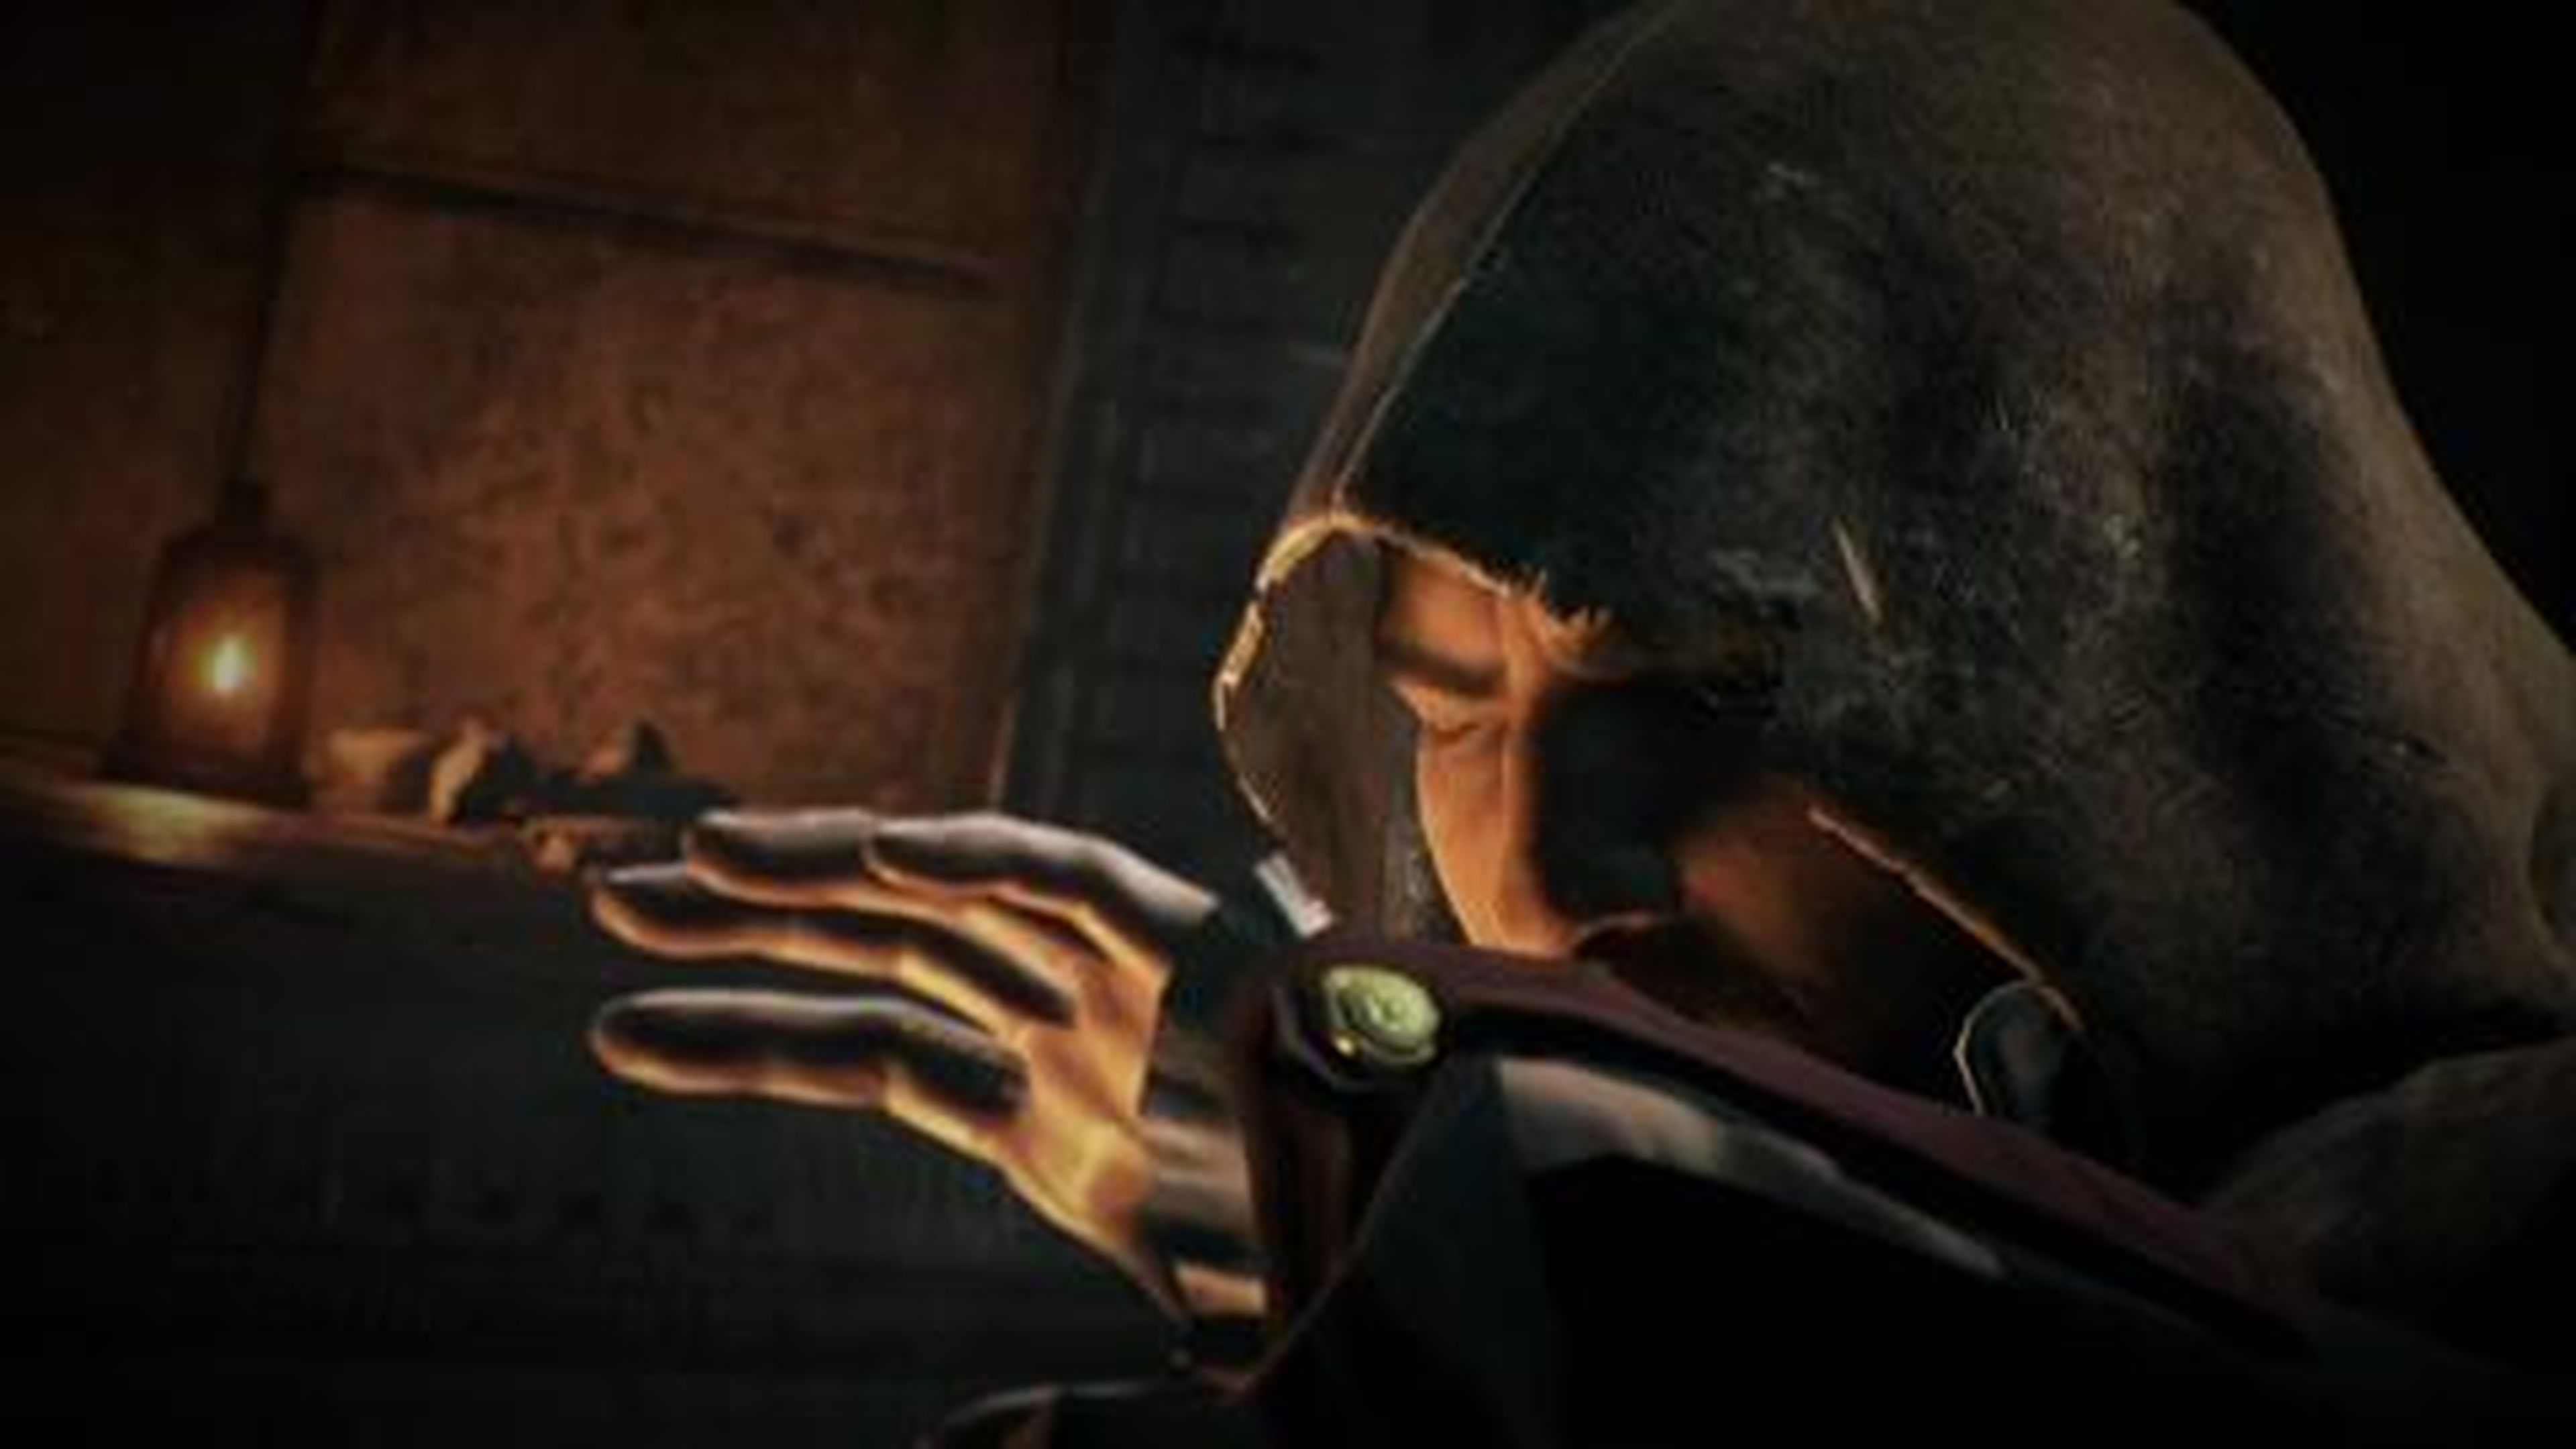 Assassin’s Creed ® Unity - DLC Reyes Muertos (Tráiler de Lanzamiento) [ES]